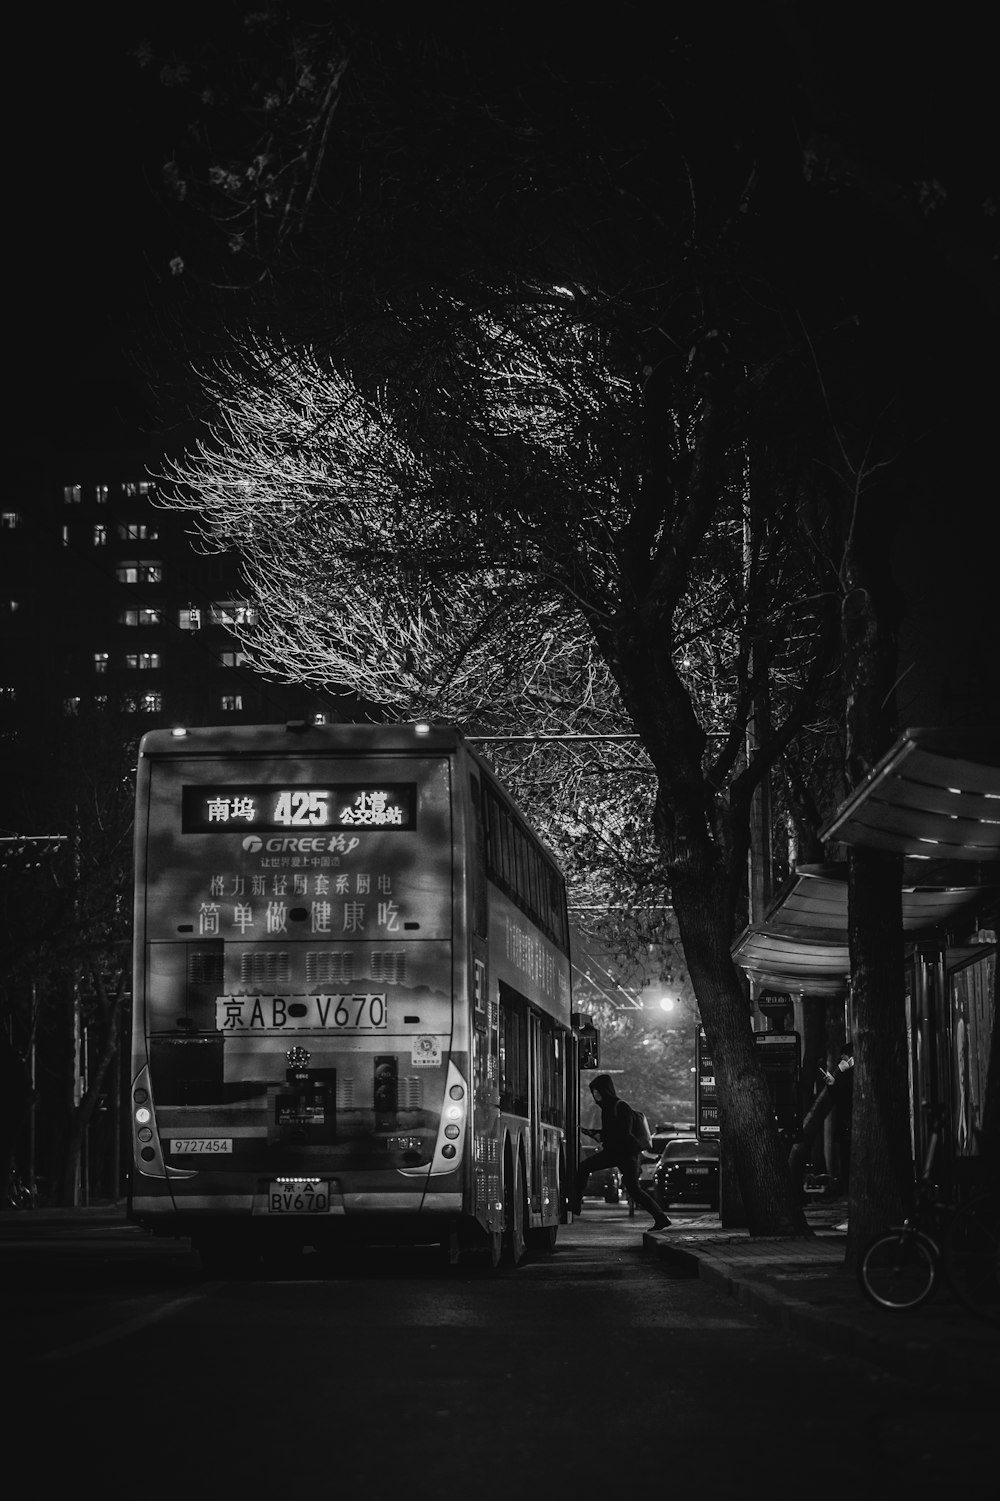 Une photo en noir et blanc d’un bus la nuit